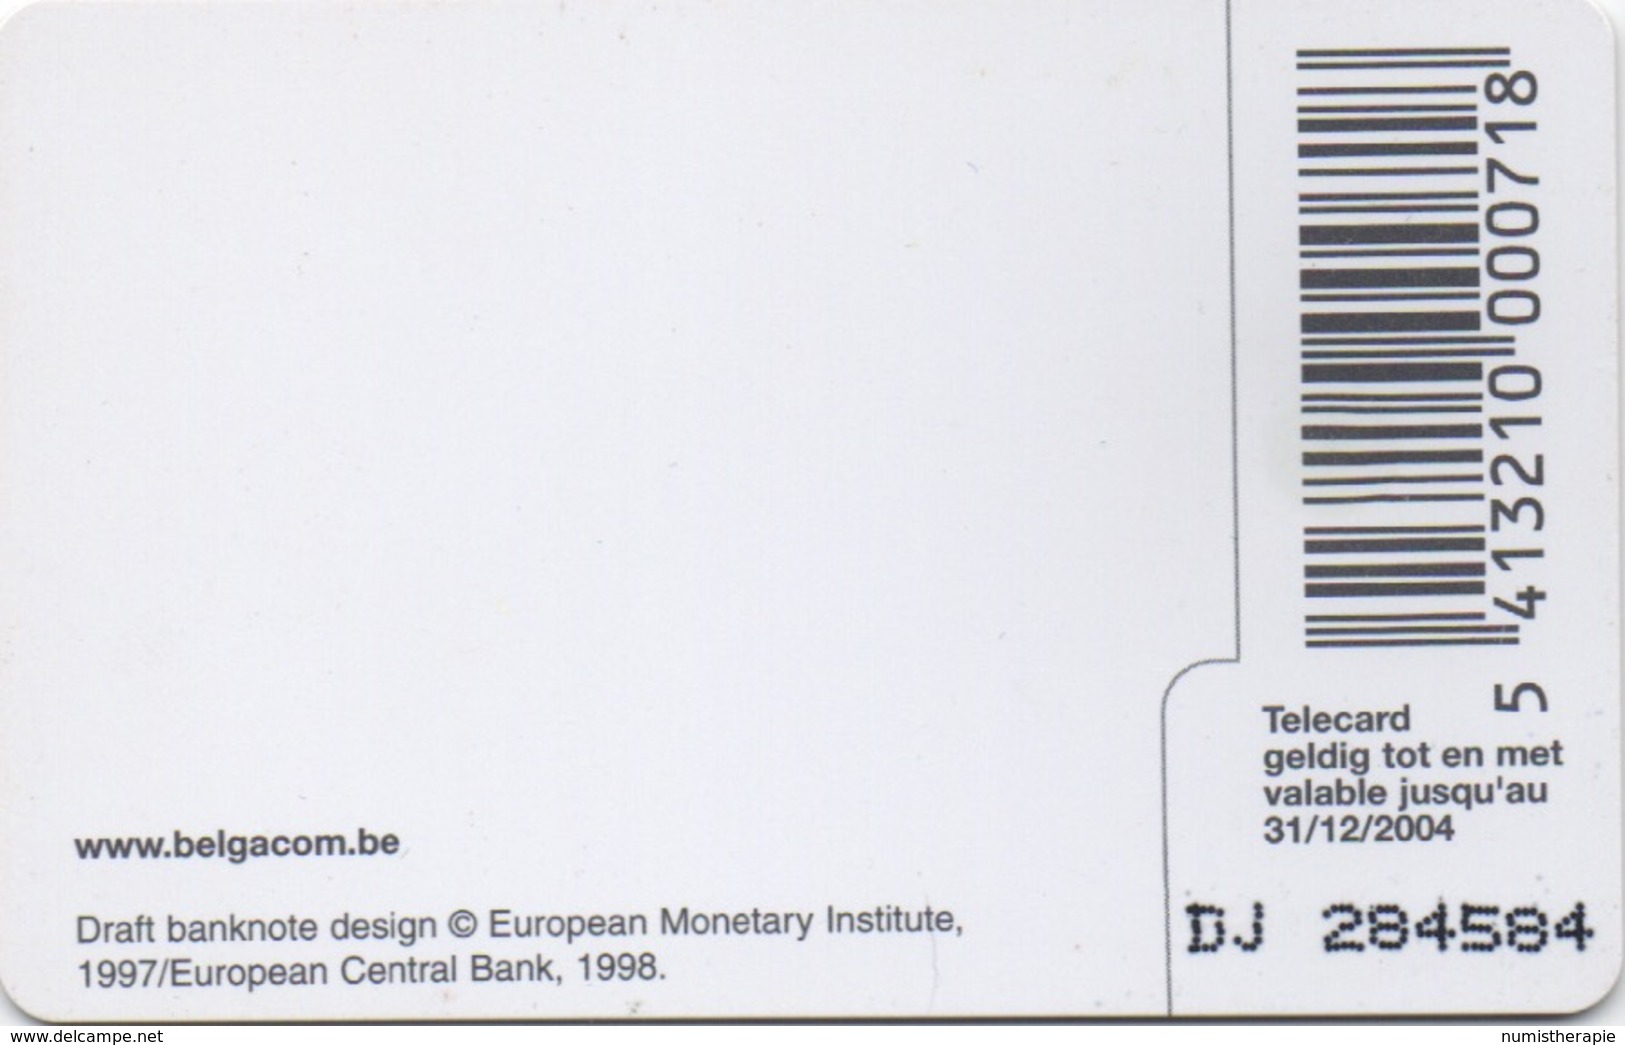 Télécarte Belgacom : 5 EUR Billet De Banque (202 BEF) Valable Jusqu'au 31/12/2004 - Timbres & Monnaies